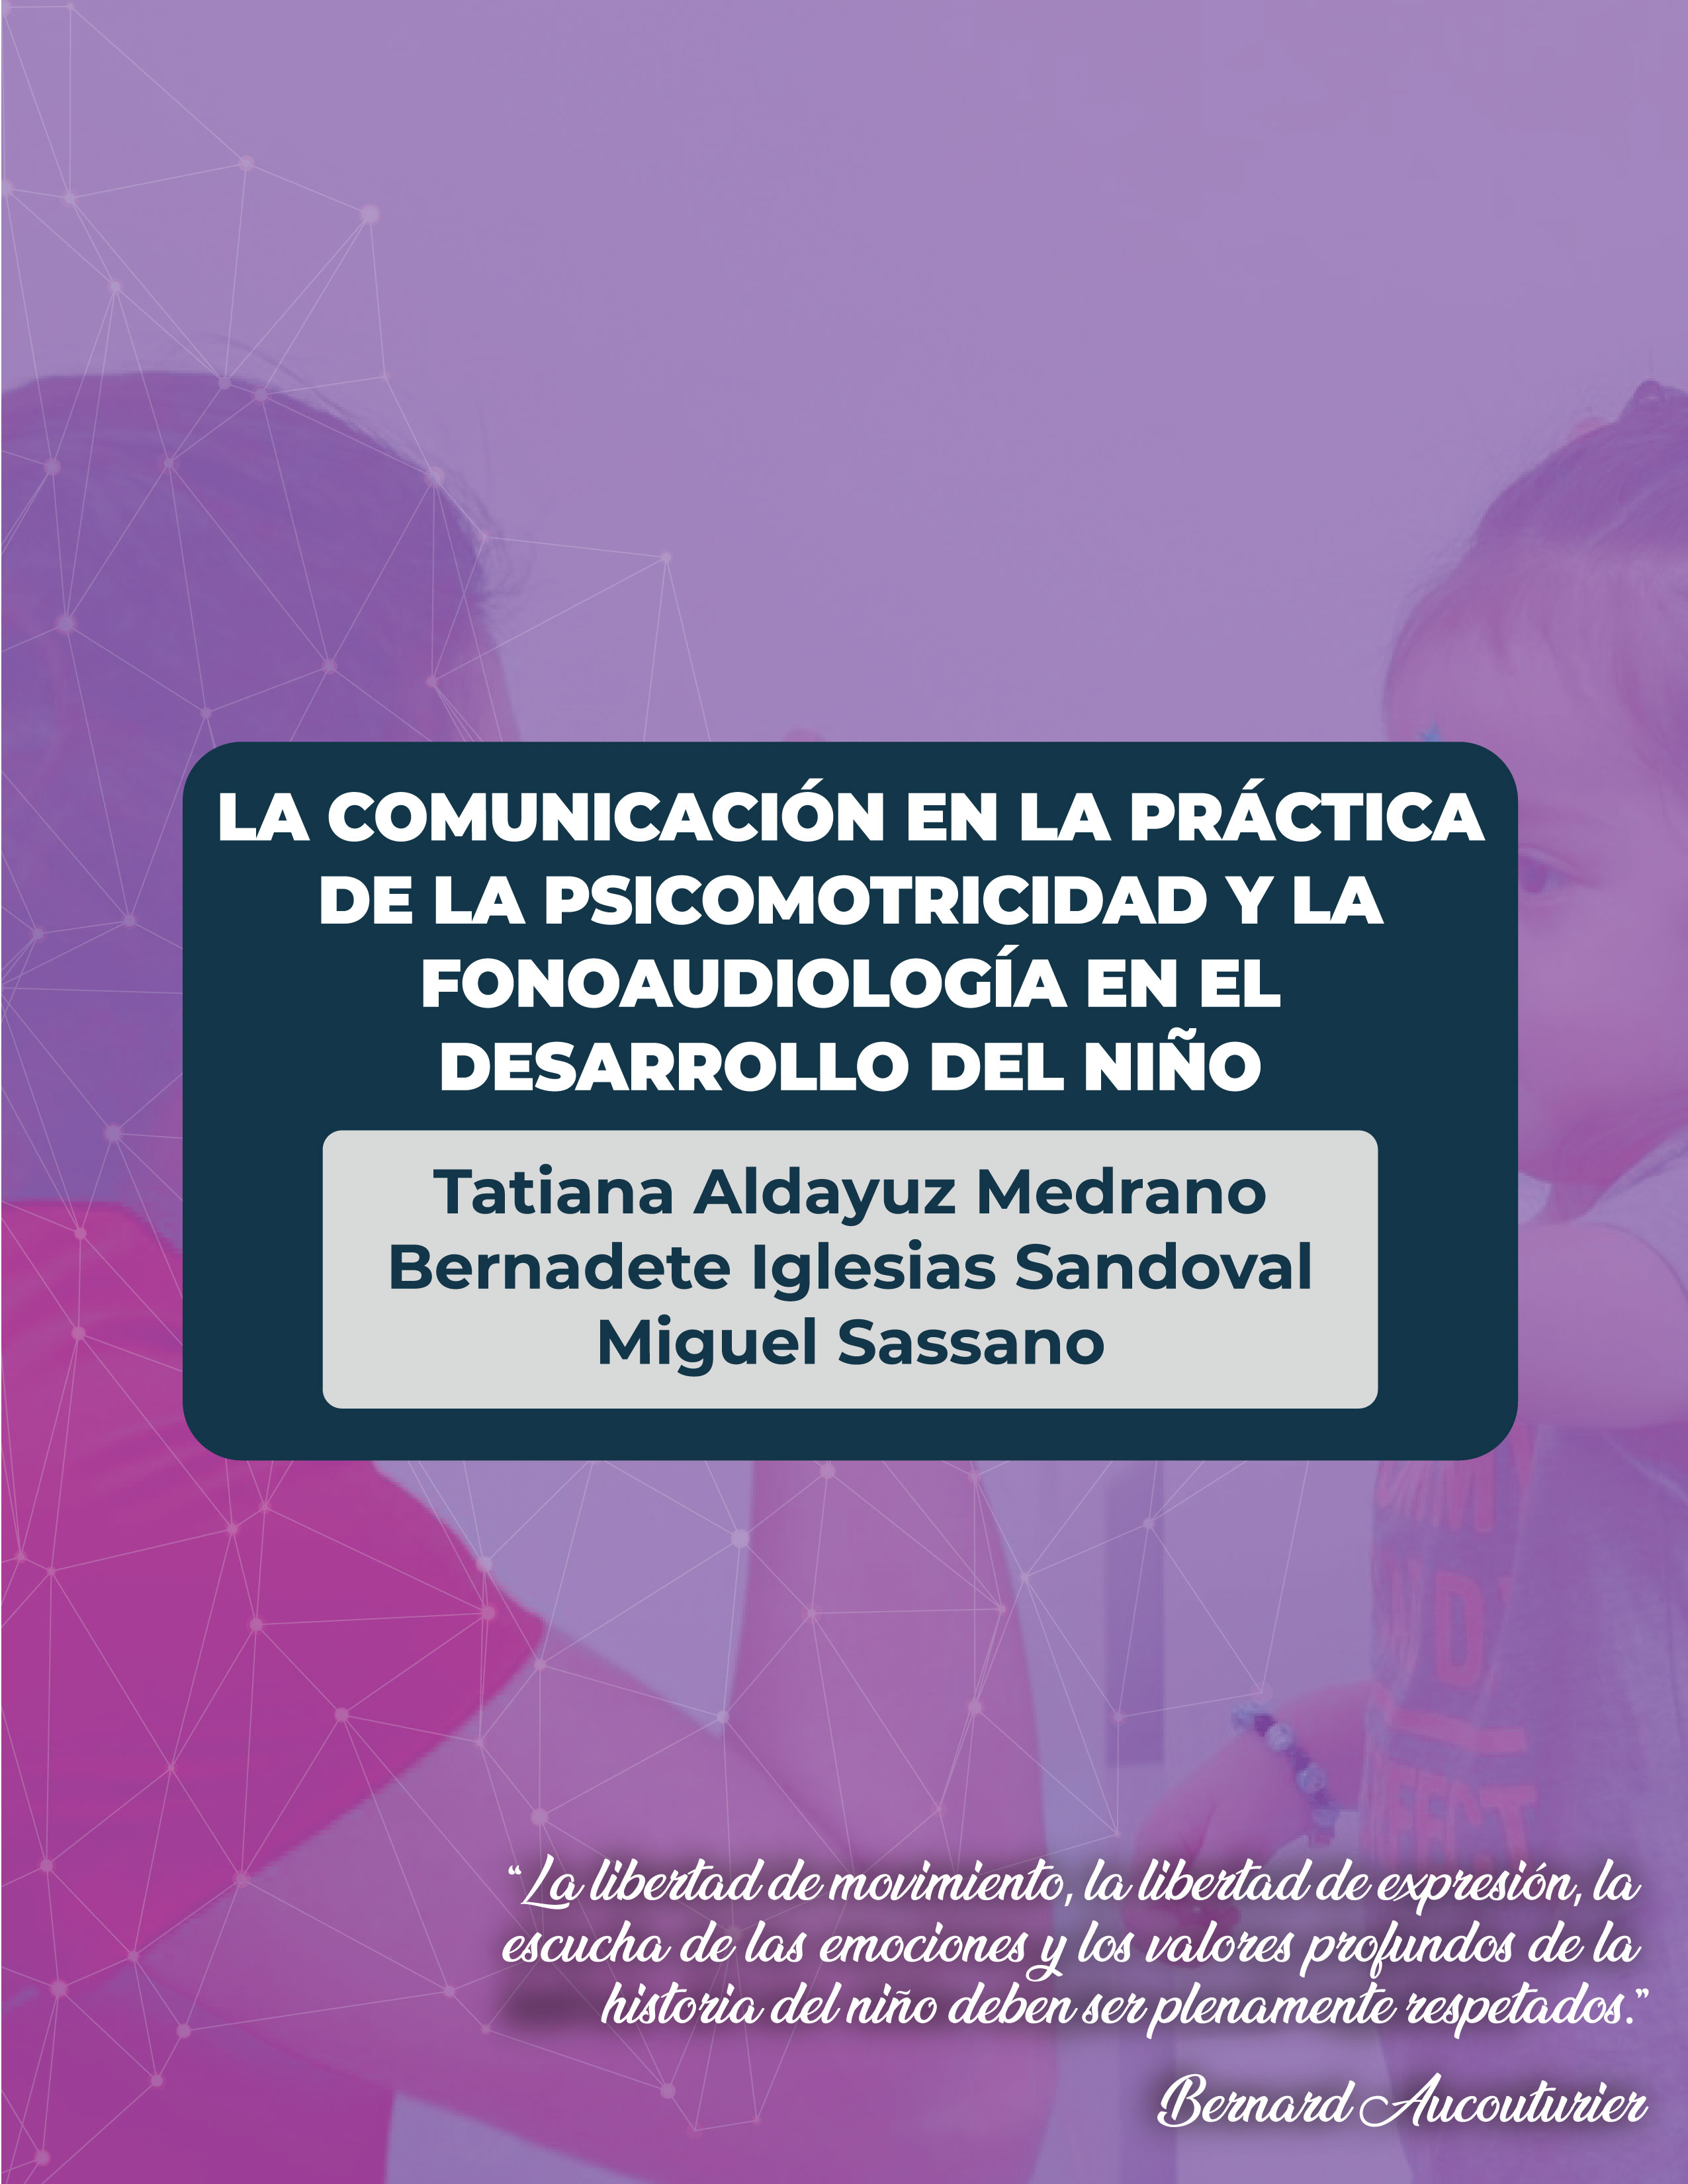 La comunicación en la práctica de la psicomotricidad y la fonoaudiología en el desarrollo del niño